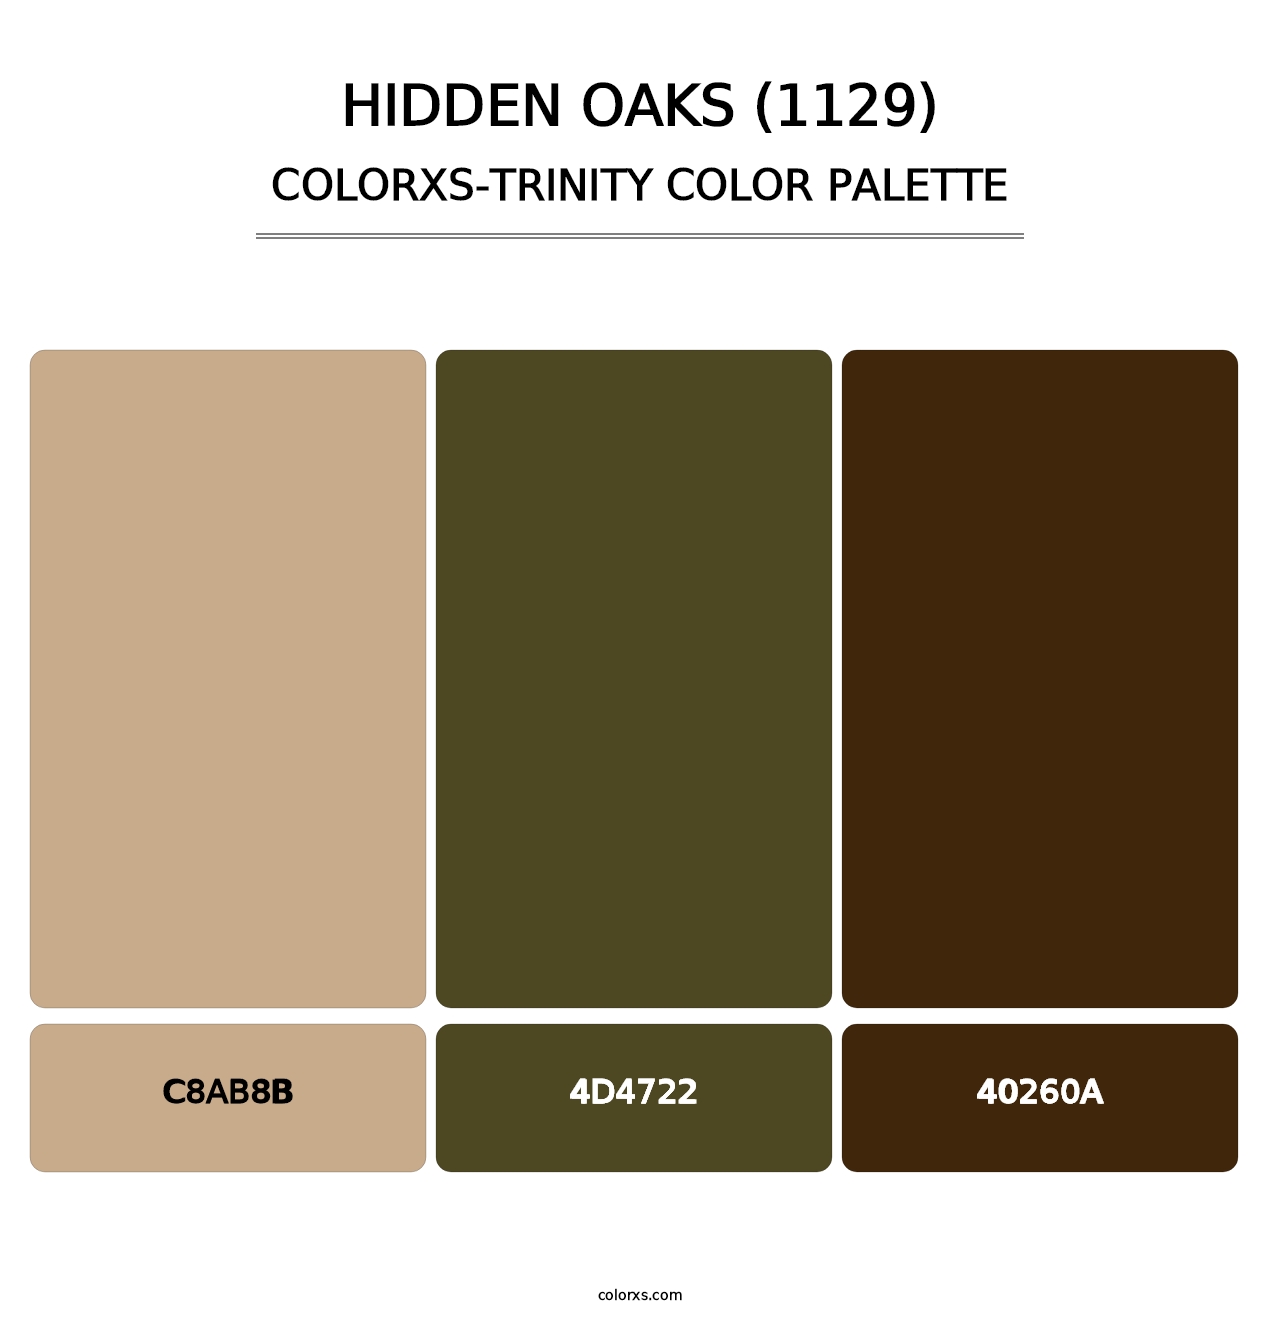 Hidden Oaks (1129) - Colorxs Trinity Palette